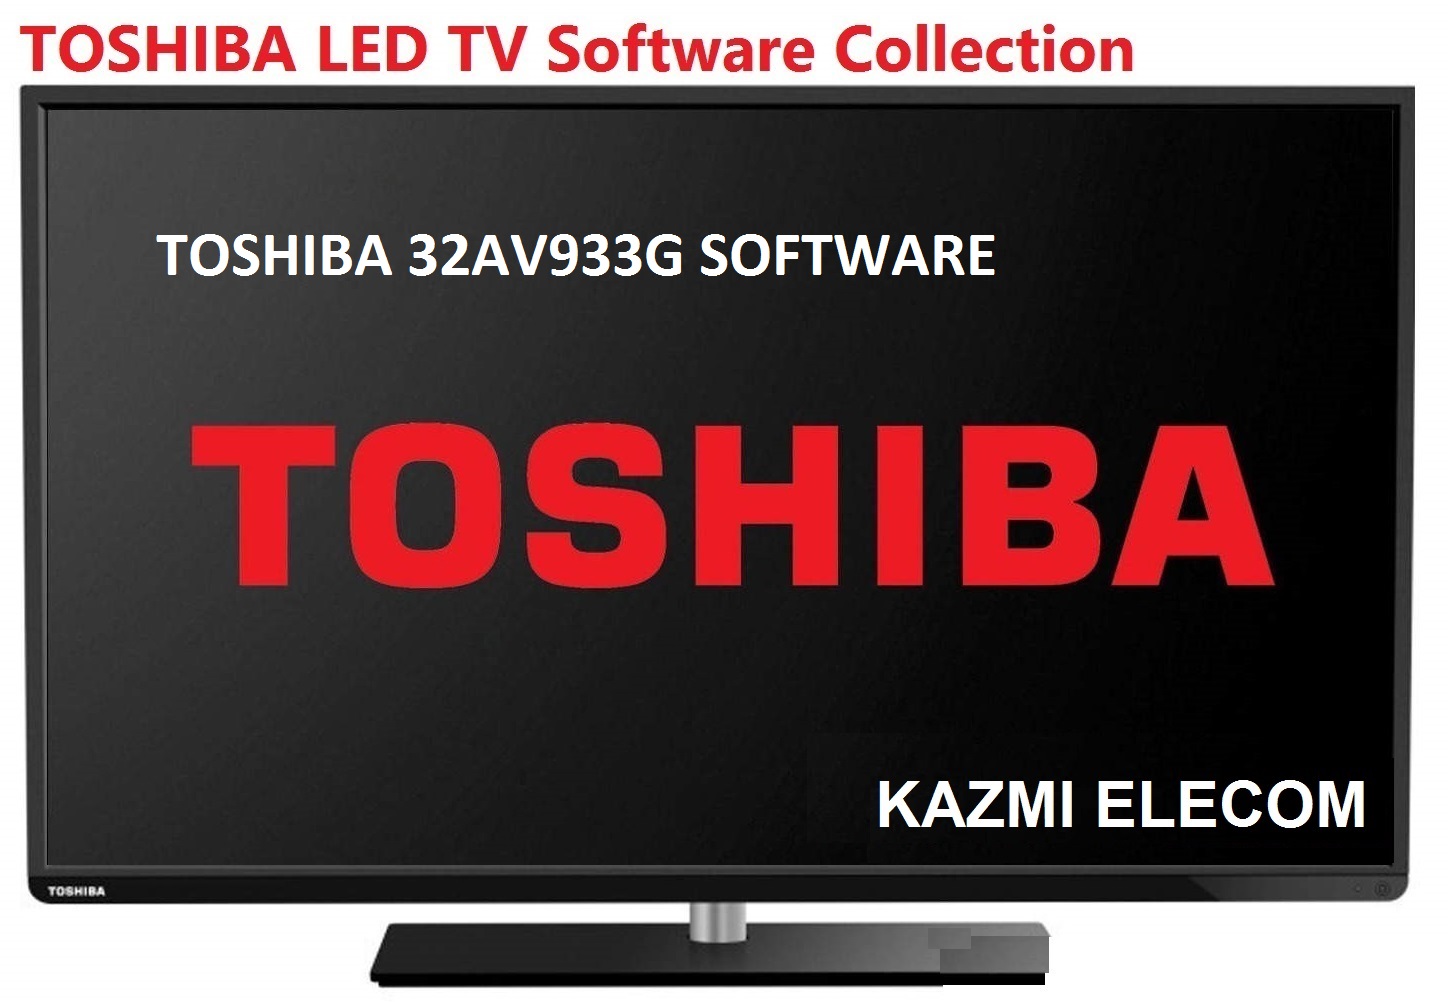 Toshiba 32Av933G